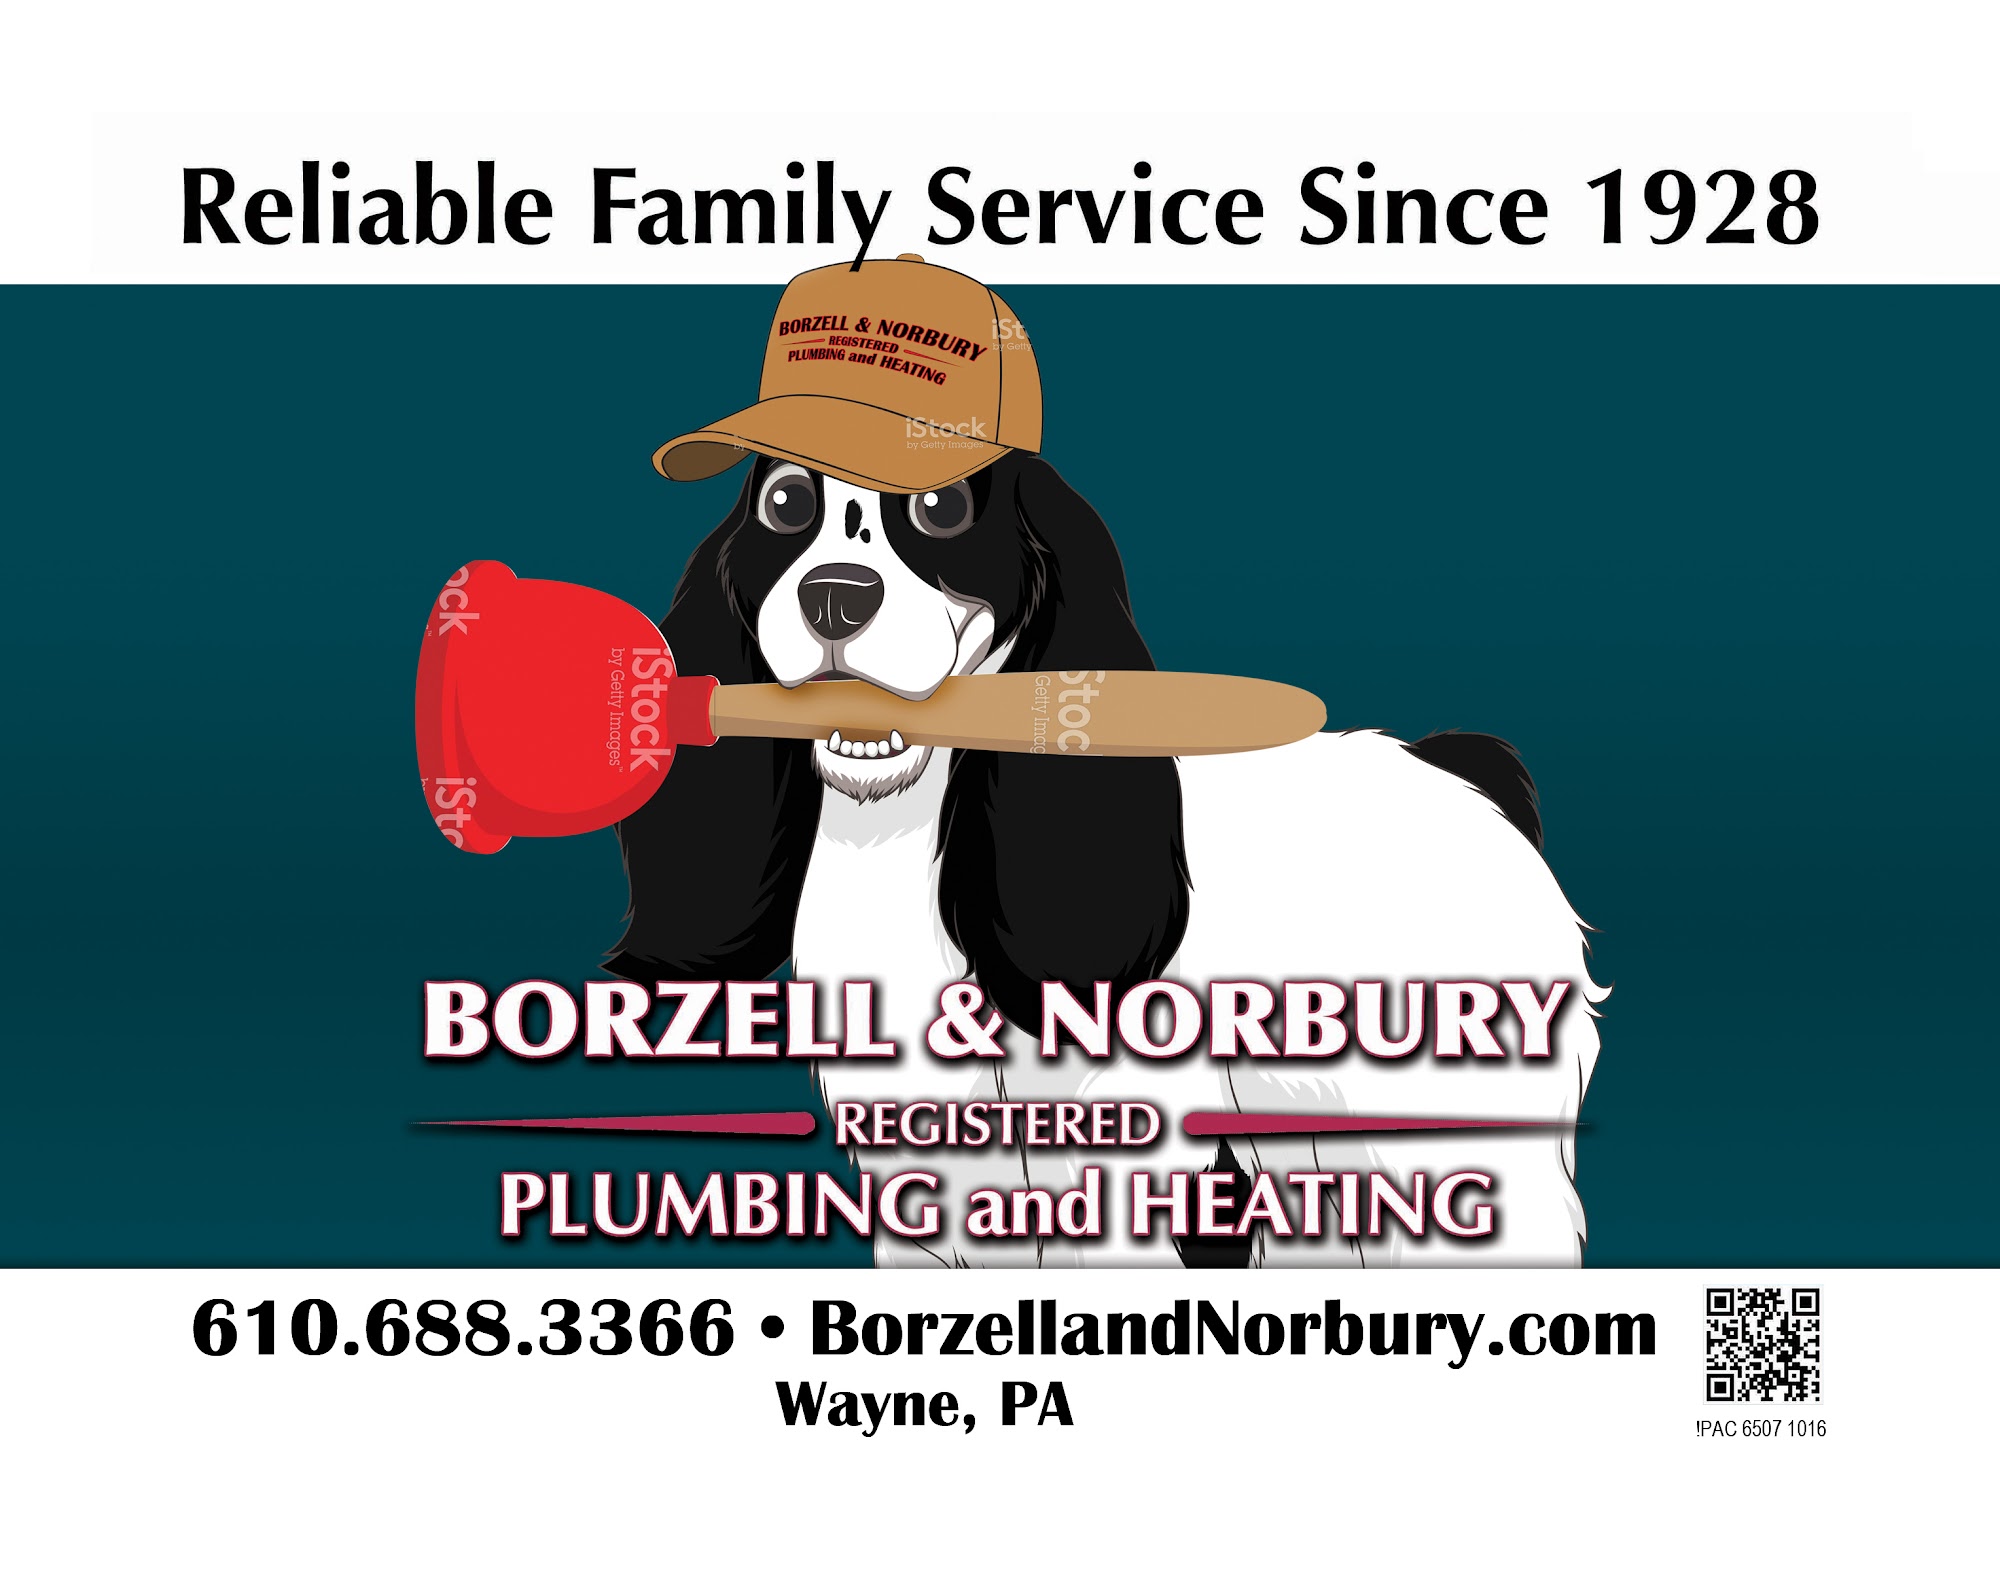 Borzell & Norbury Plumbing and Heating